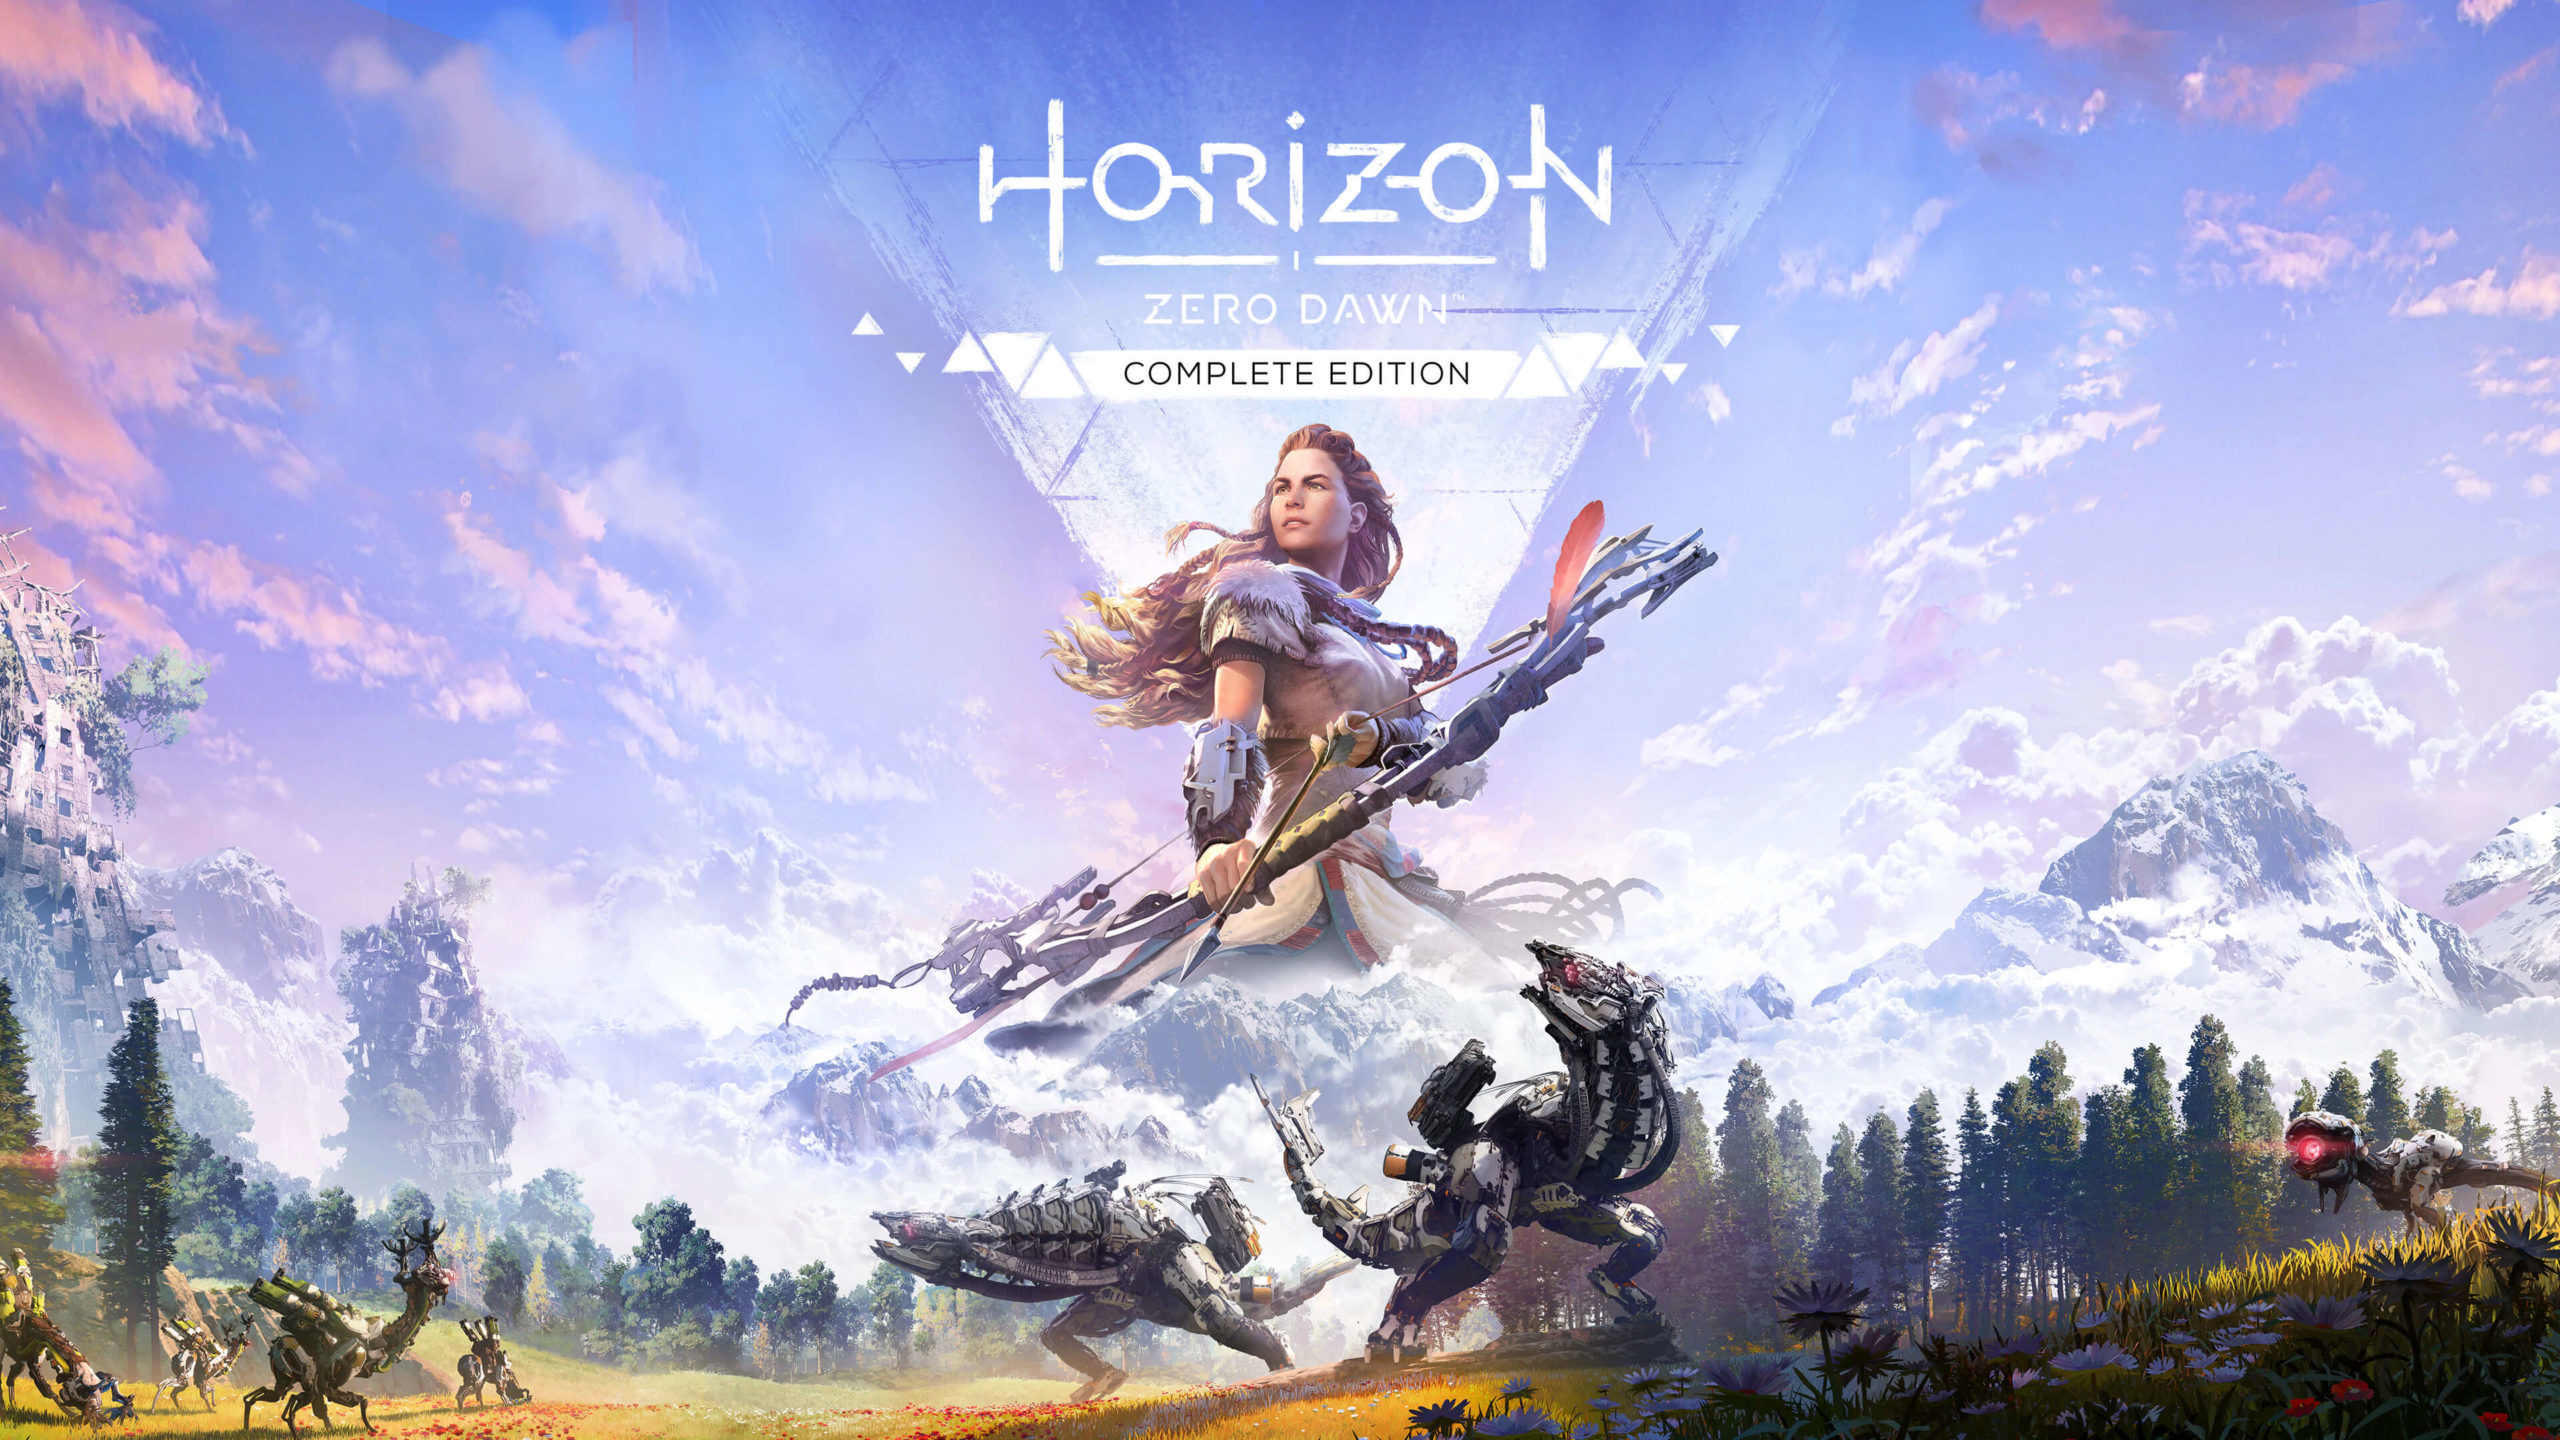 Horizon Zero Dawn Complete Edition será liberado para download de graça no PlayStation 4 e PS5 via PlayStation Store nesta terça-feira.